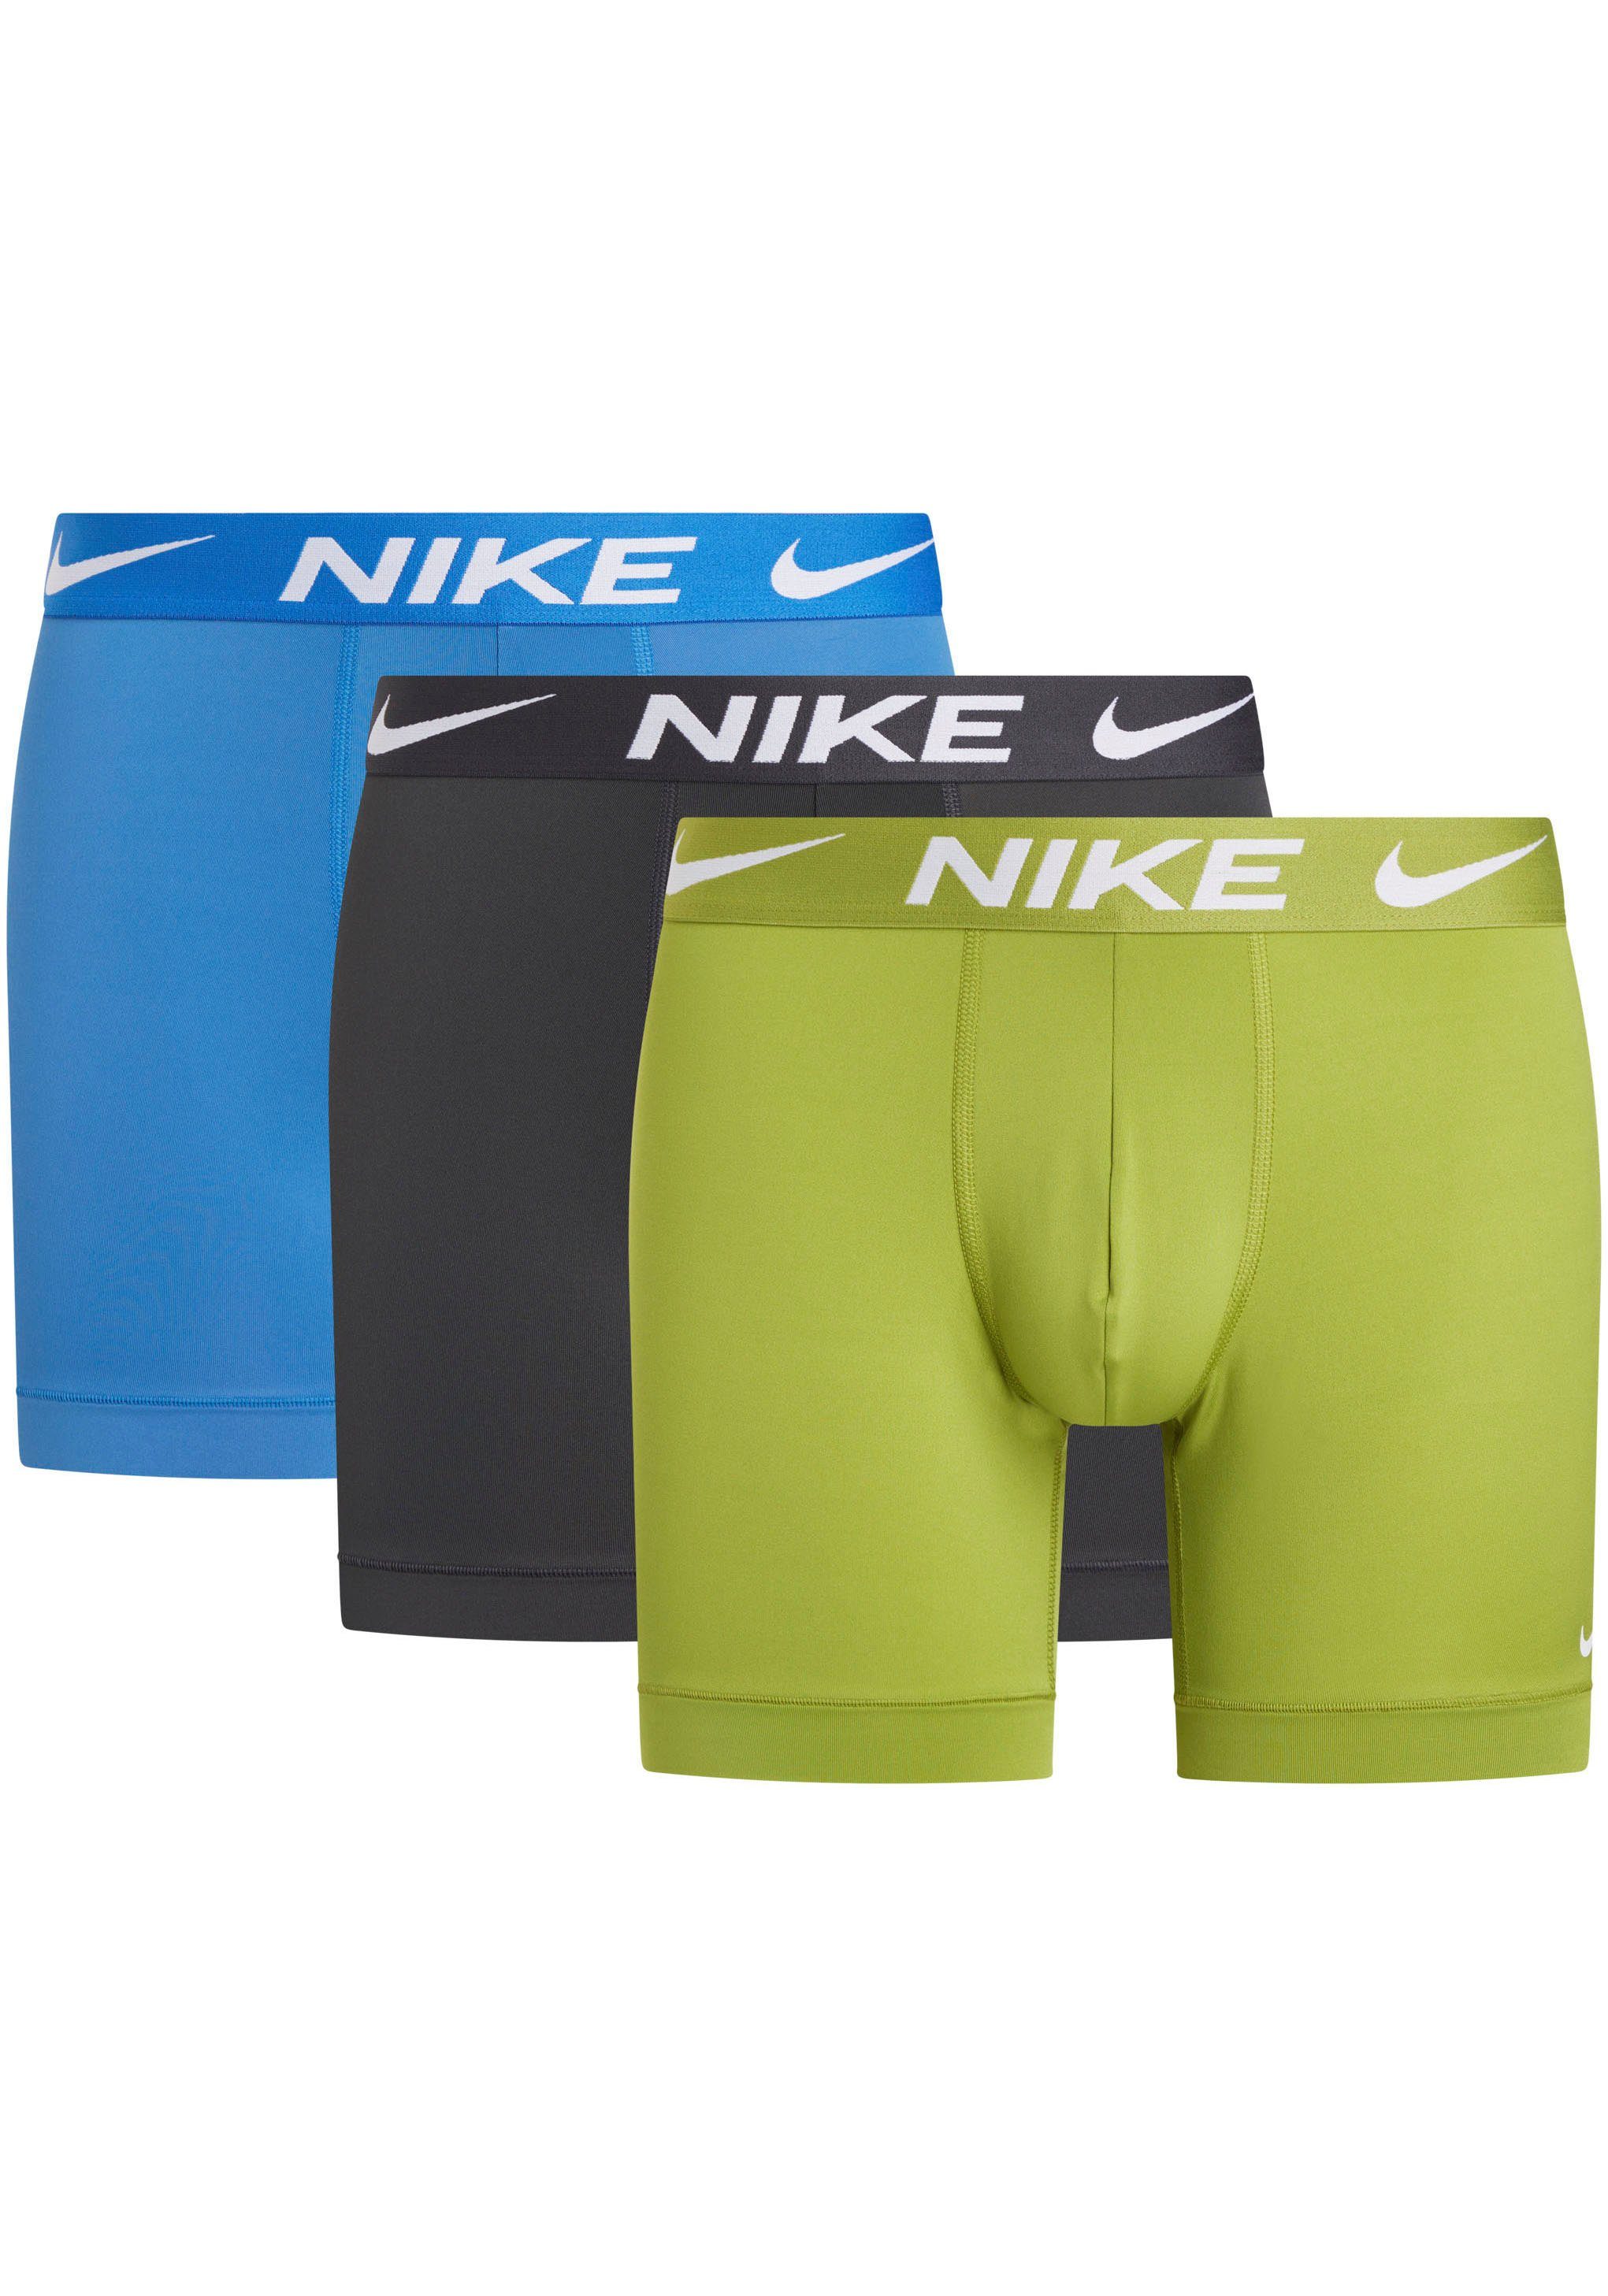 Nike Boxershort met labelprint in een set van 3 stuks